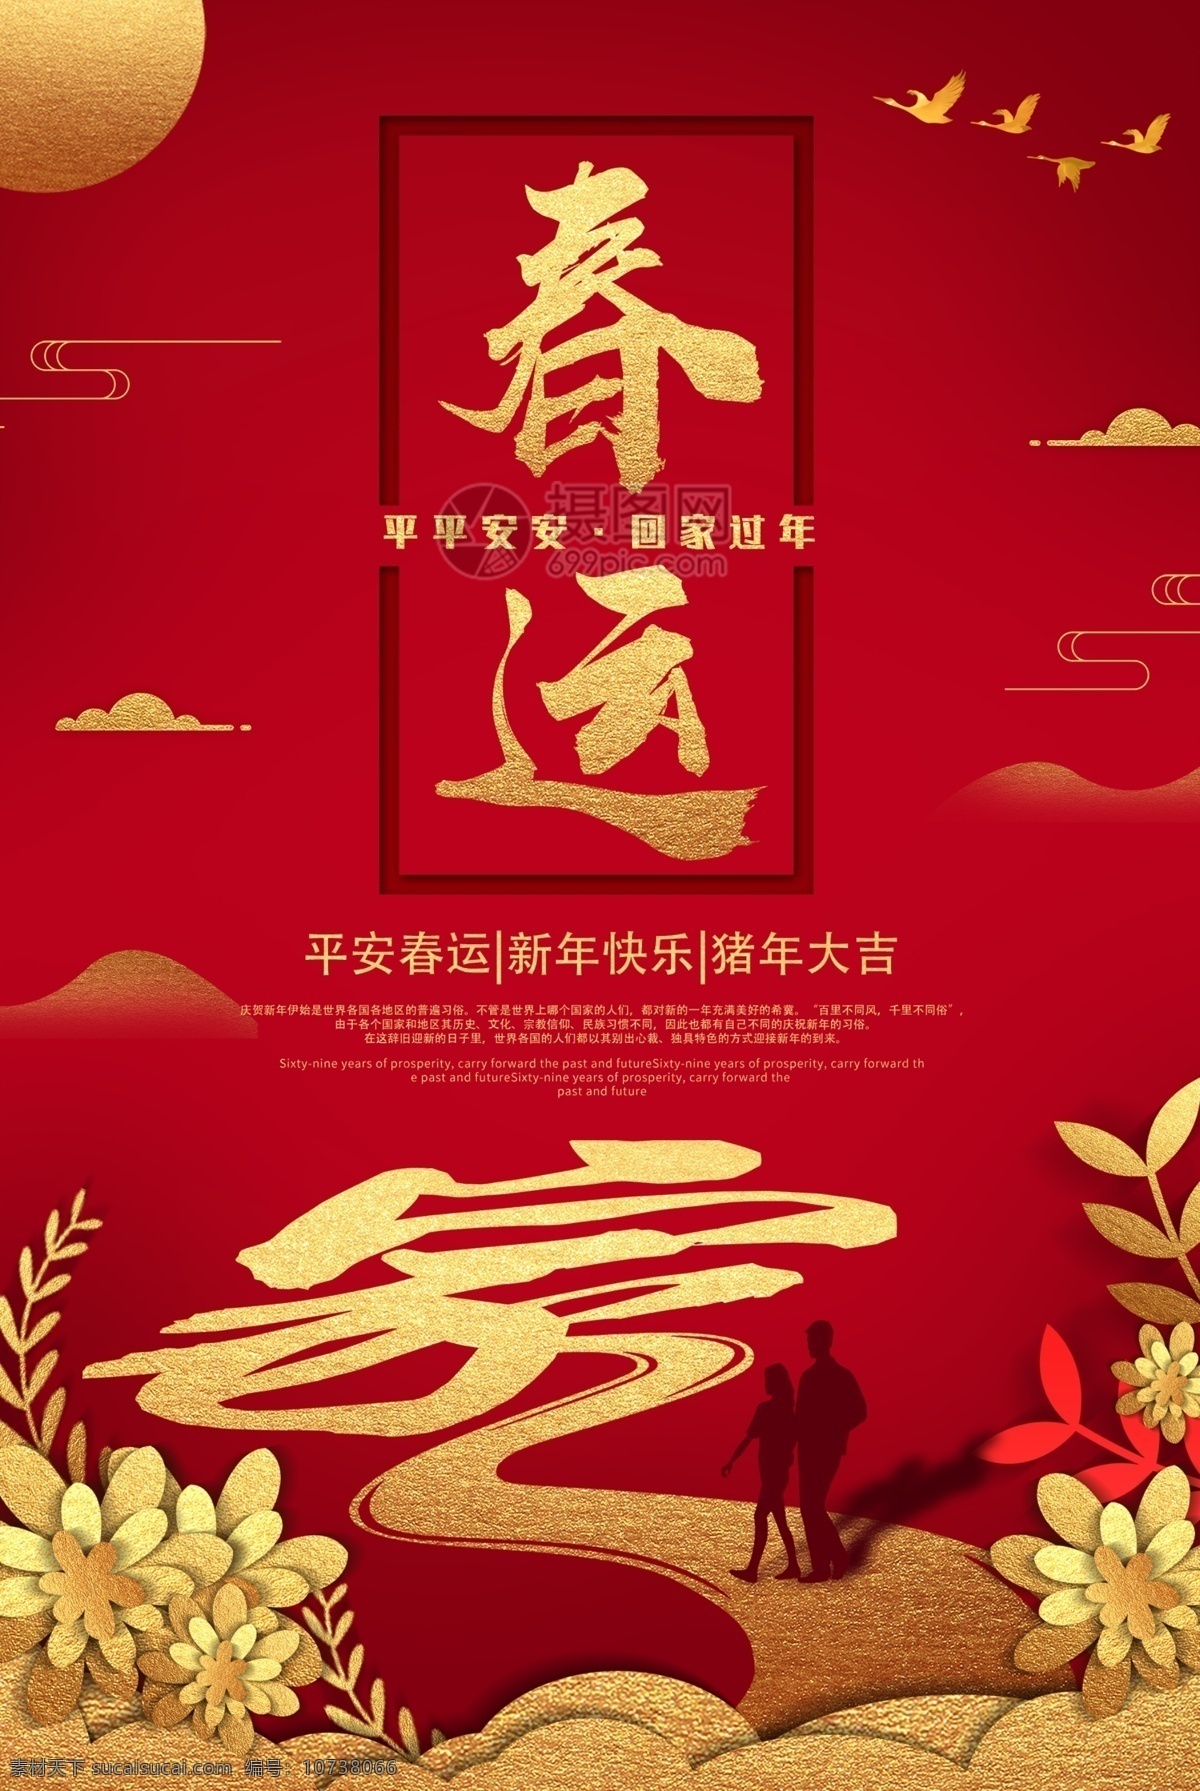 中国 红春 运 新年 节日 海报 中国红 春运 回家 回家过年 节日海报 金猪 平安回家 猪年大吉 猪年 家 亲人